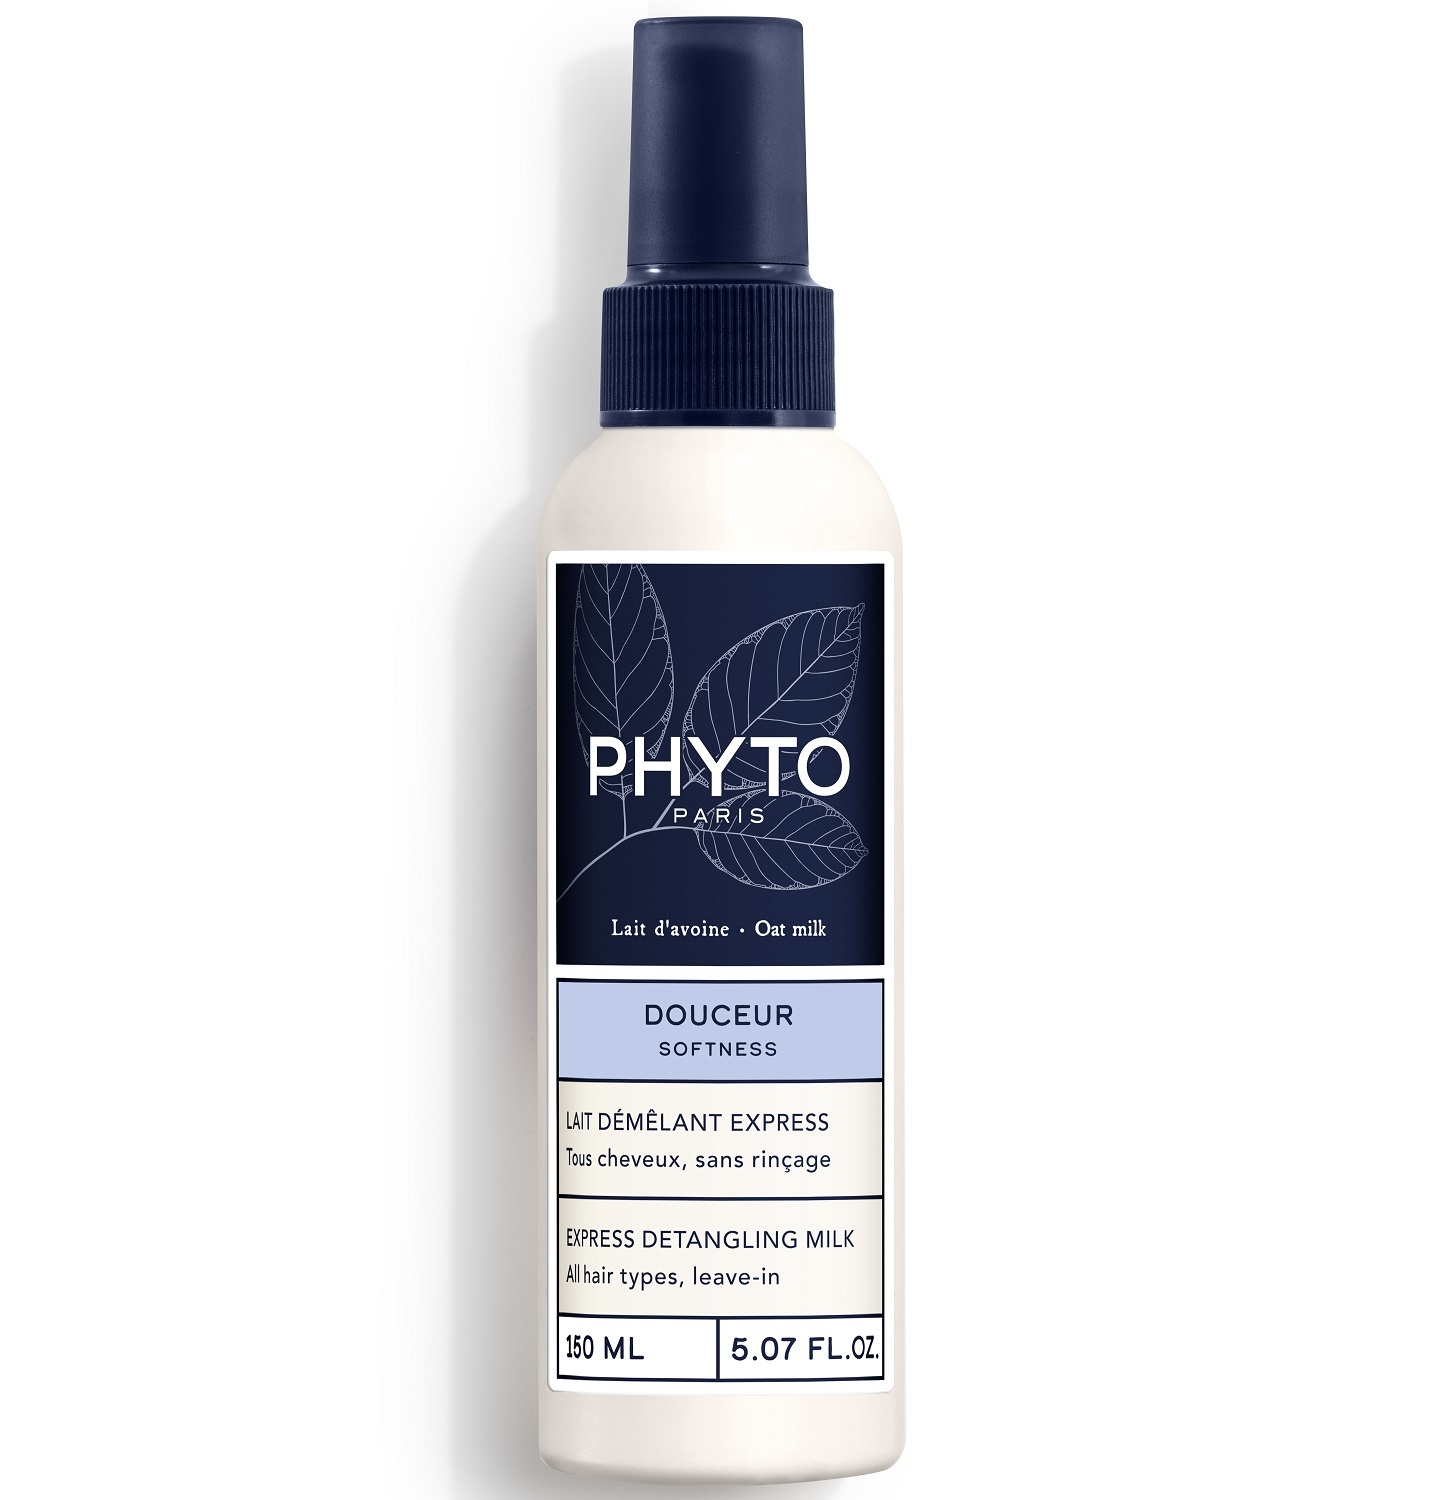 Phyto Несмываемое молочко-кондиционер, облегчающее расчесывание любого типа волос, 150 мл (Phyto, Softness)